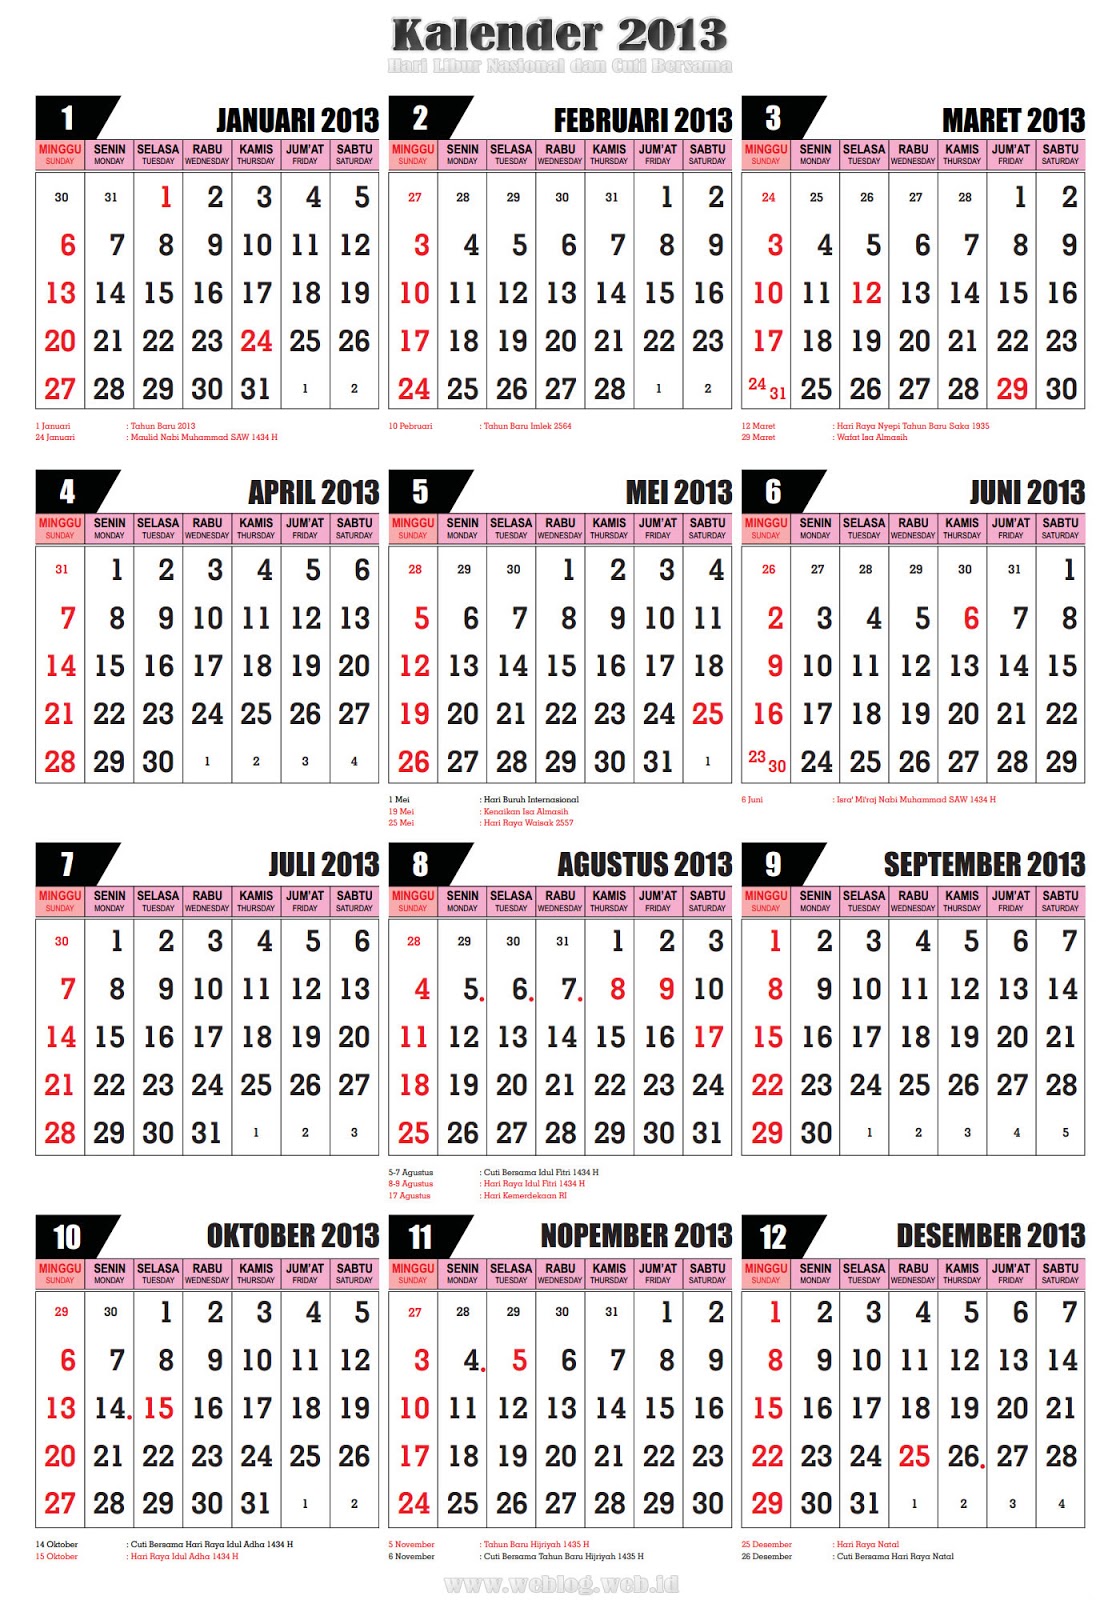 ... kalender cuti bersama 2013, kalender hari libur nasional 2013, gambar